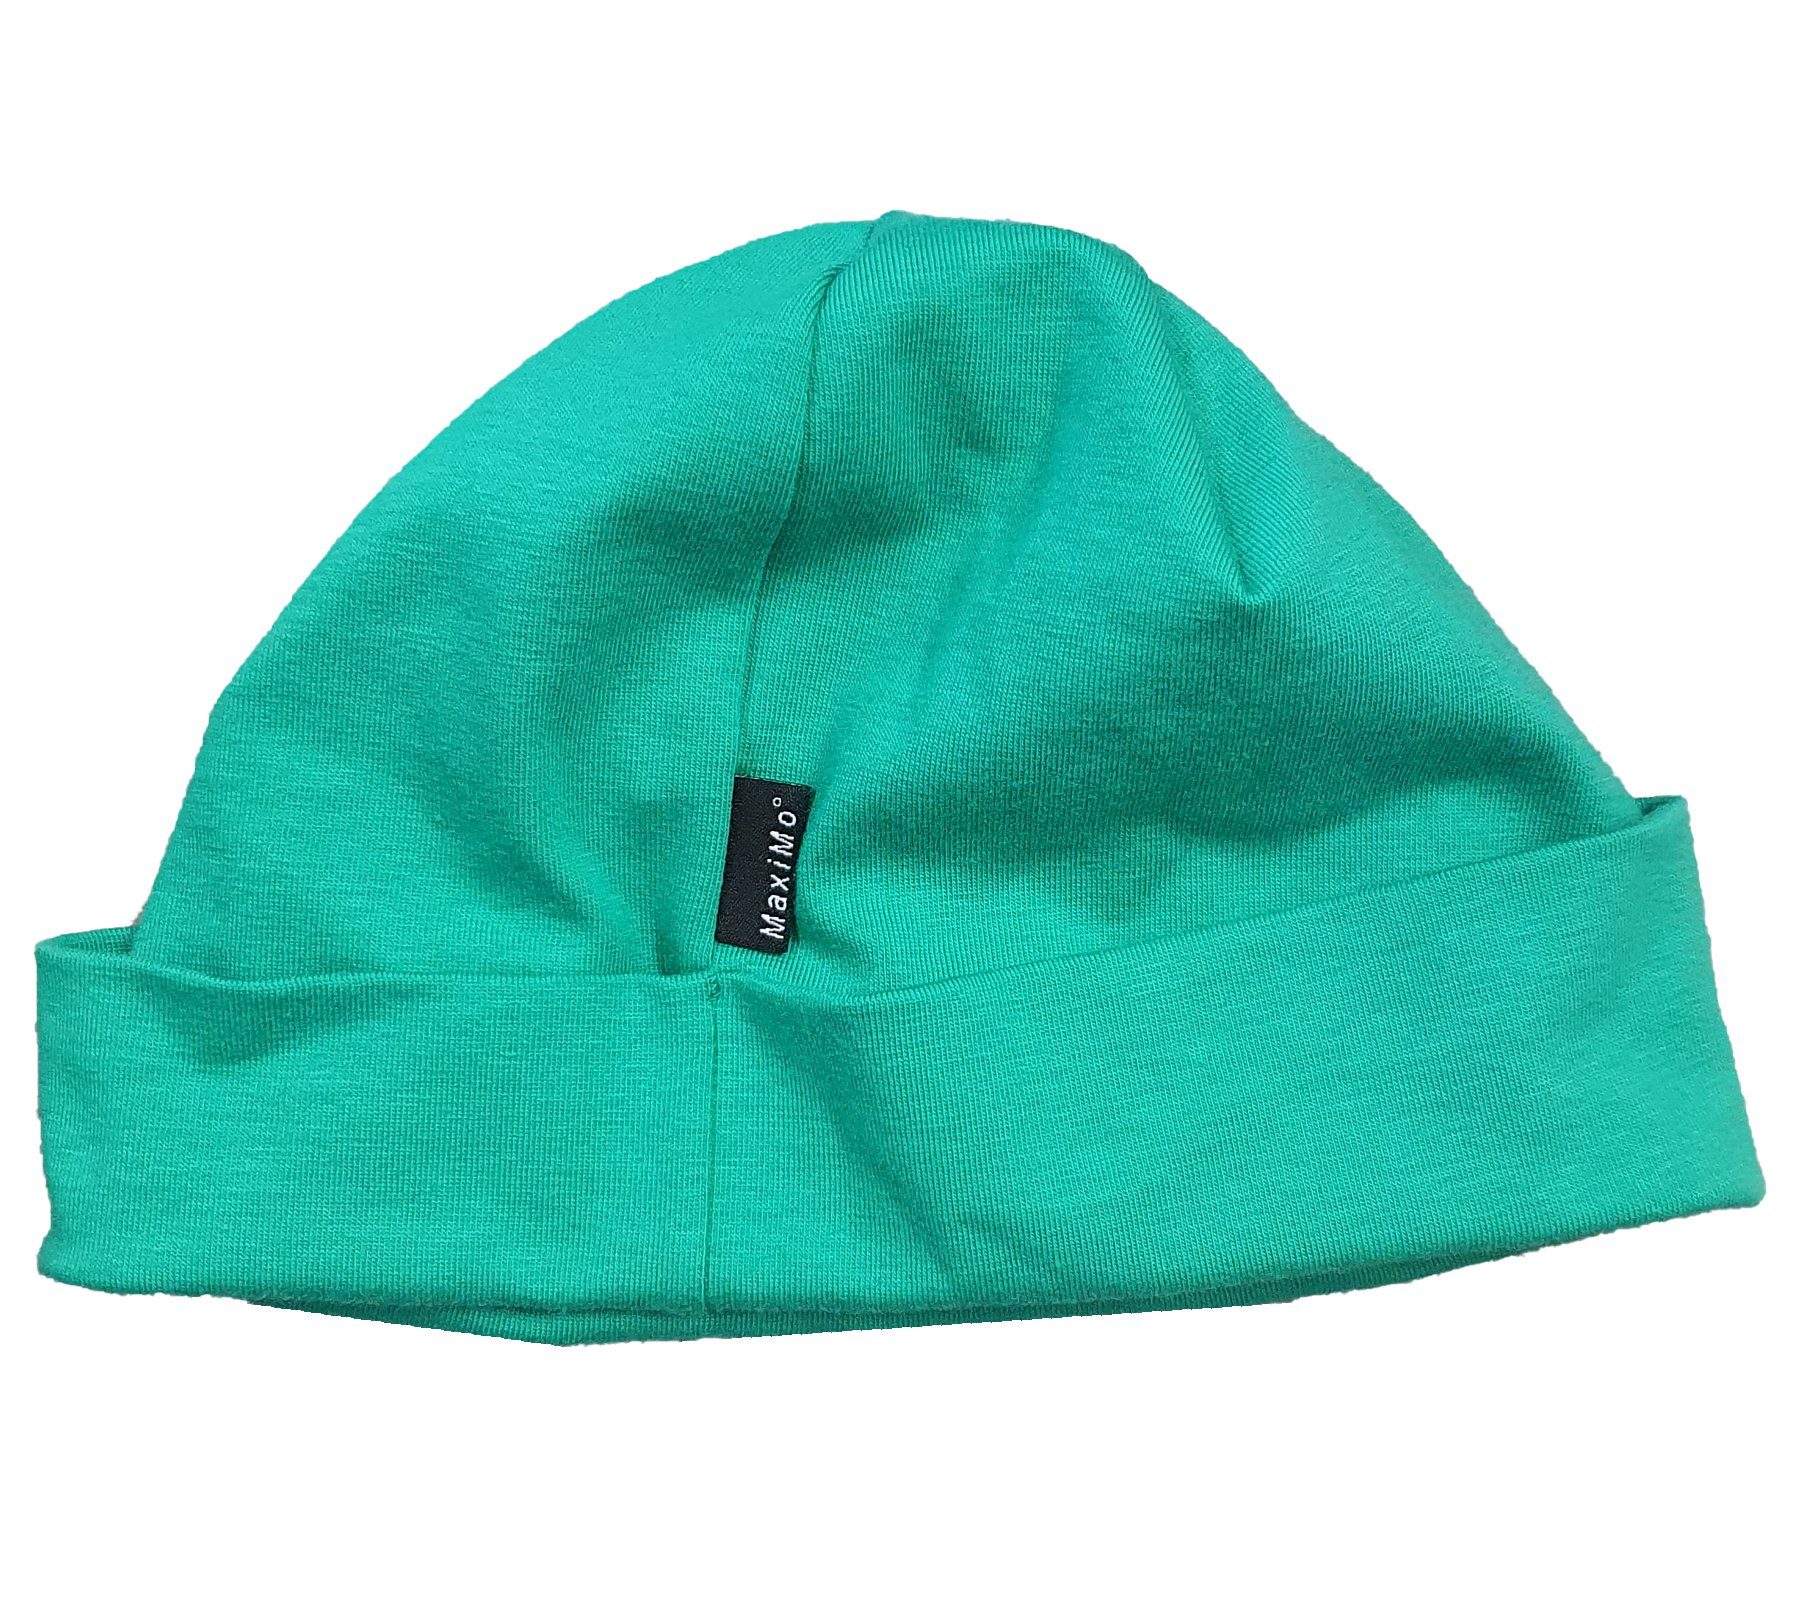 MAXIMO Jerseymütze maximo weiche Grün Jersey-Mütze Kinder Umschlag-Mütze Kopfbedeckung Kleinkinder